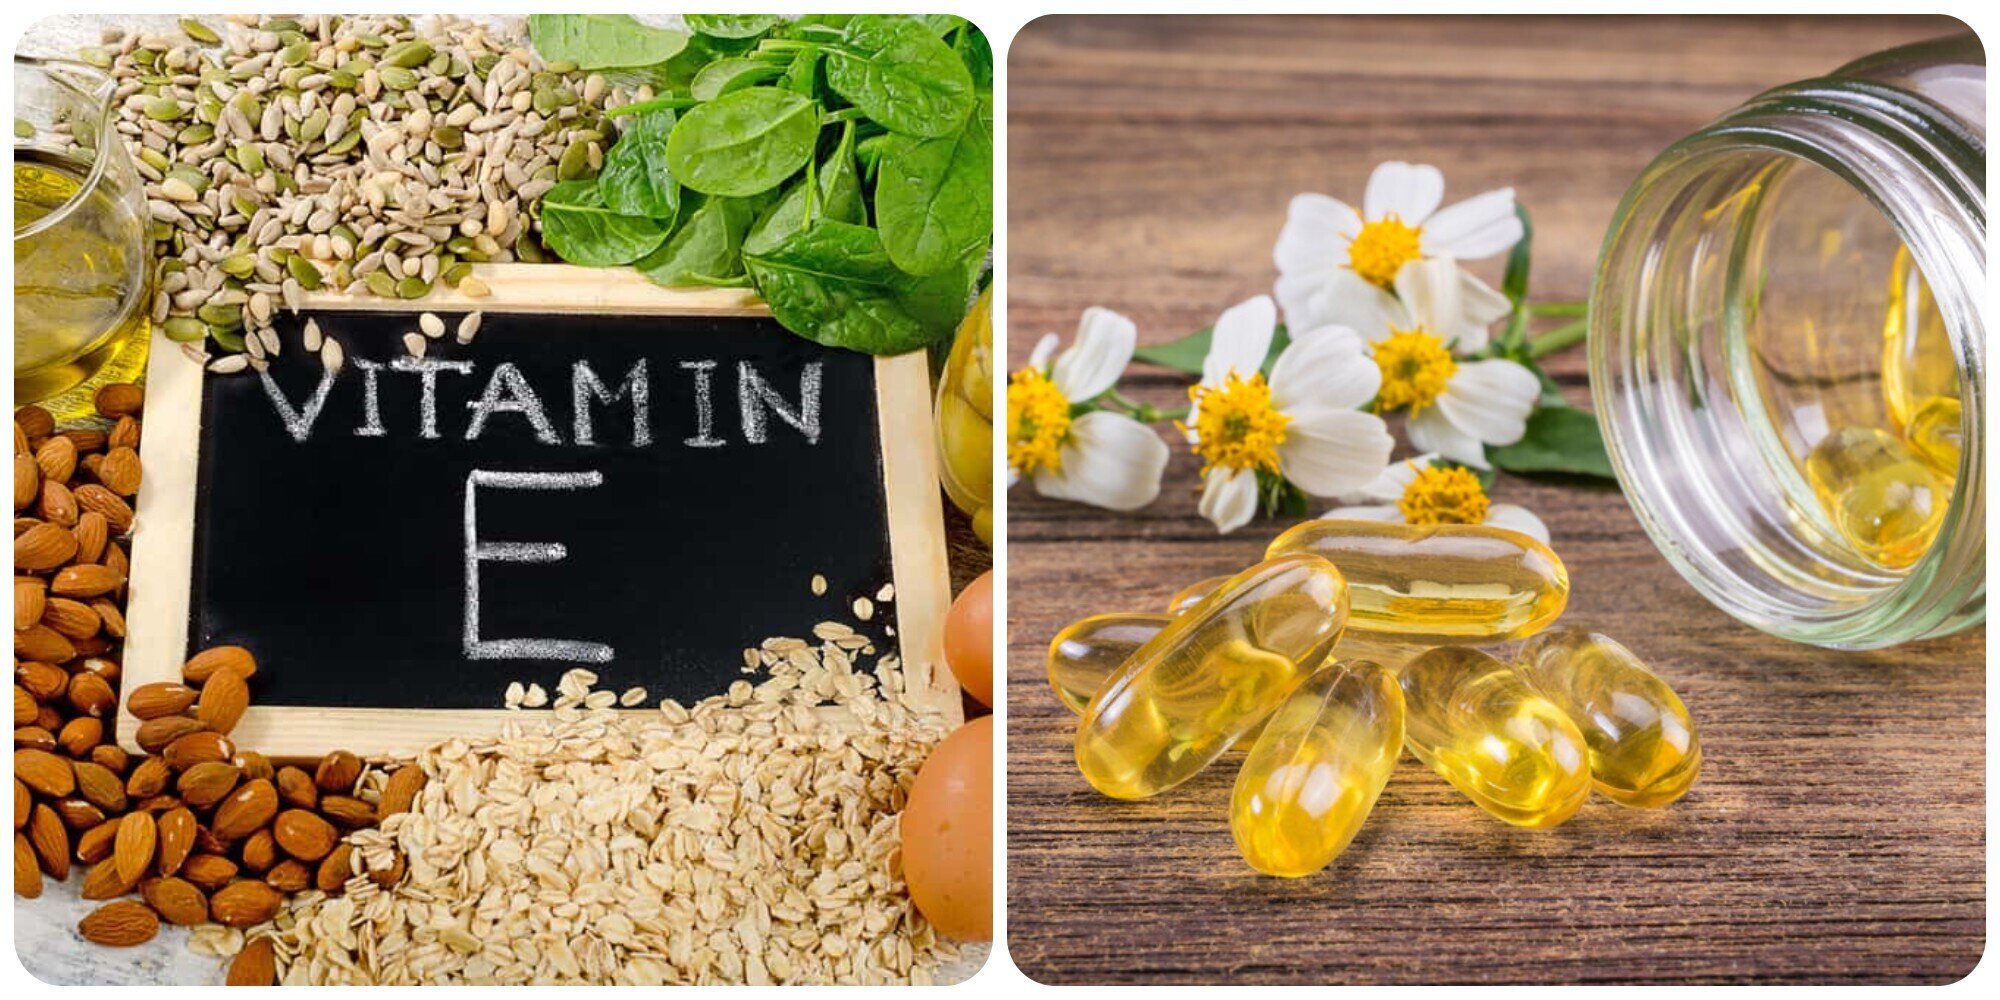 Vitamin E mang lại nhiều lợi ích đối với sức khoẻ.